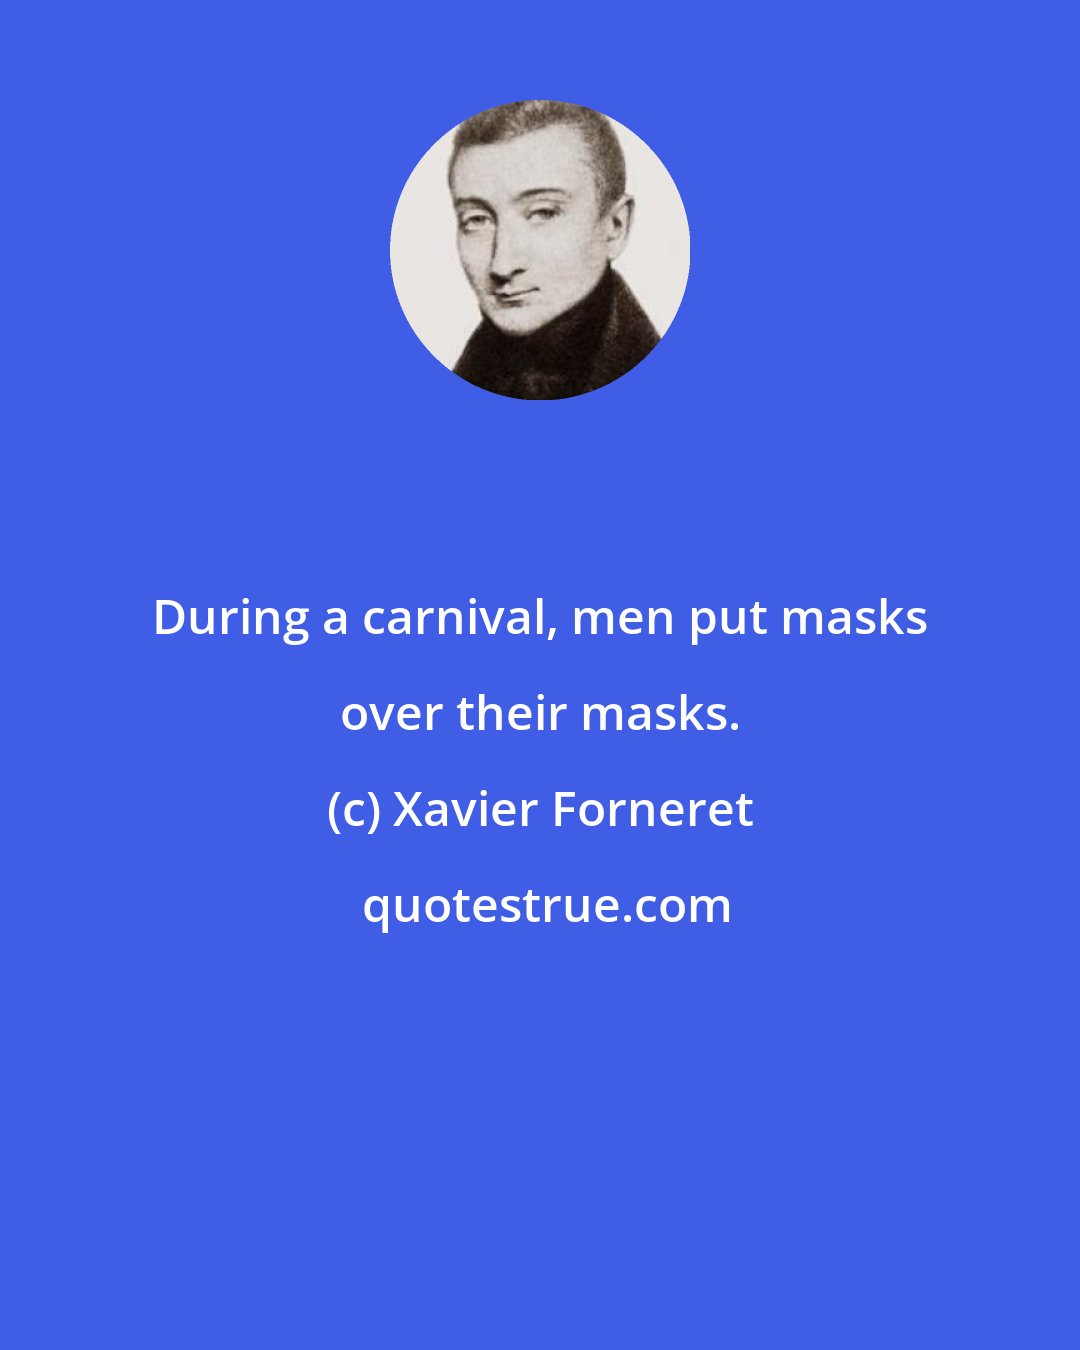 Xavier Forneret: During a carnival, men put masks over their masks.